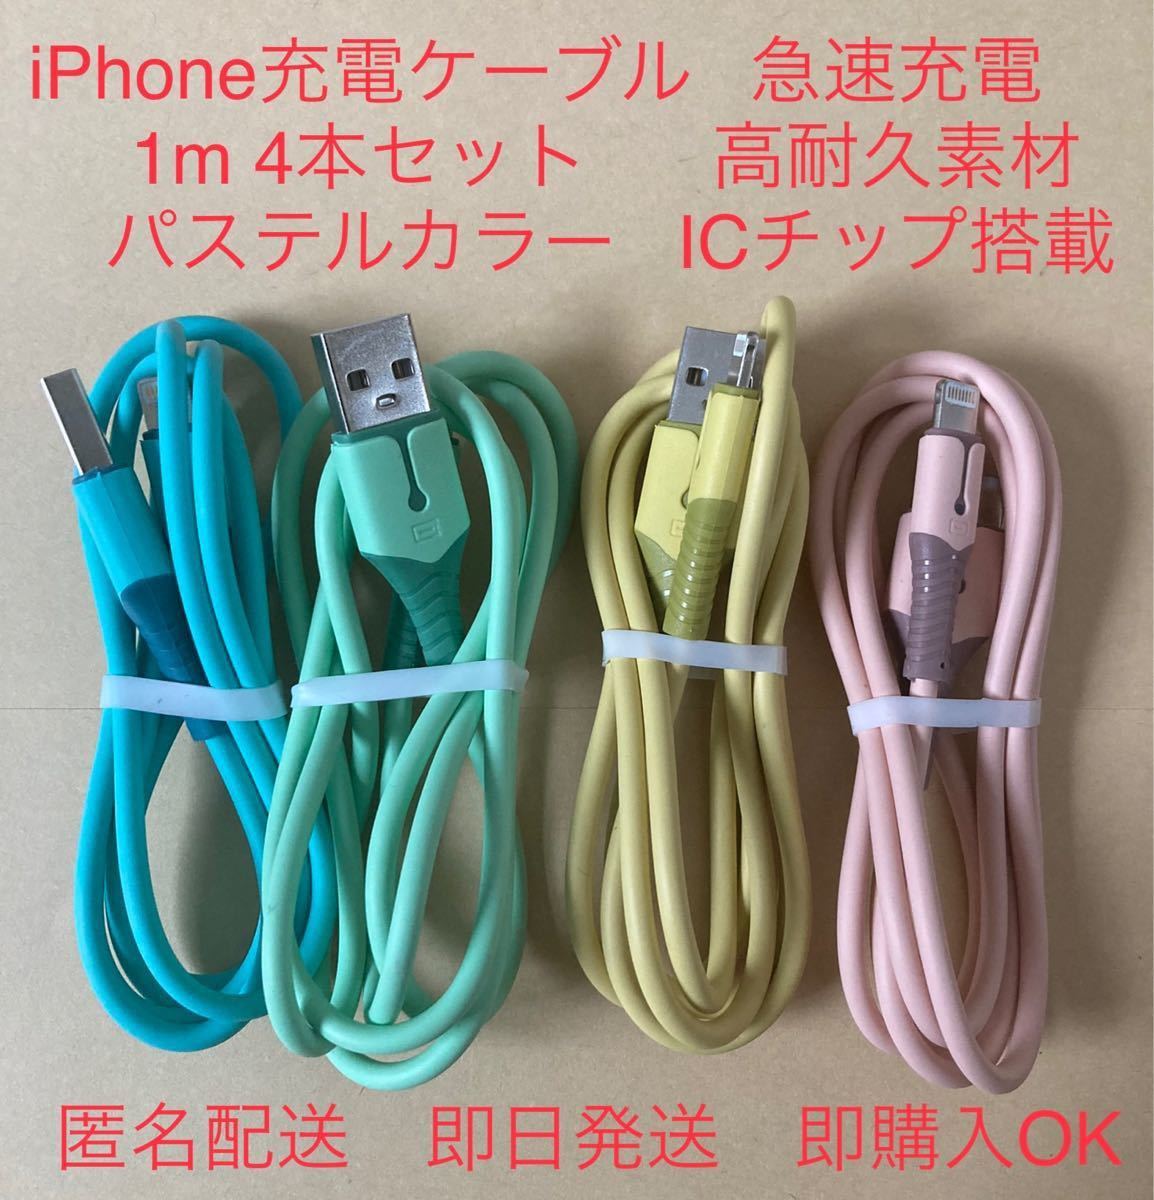 iPhone ライトニング 1m 4色セット ケーブル パステル 【人気No.1】 ケーブル